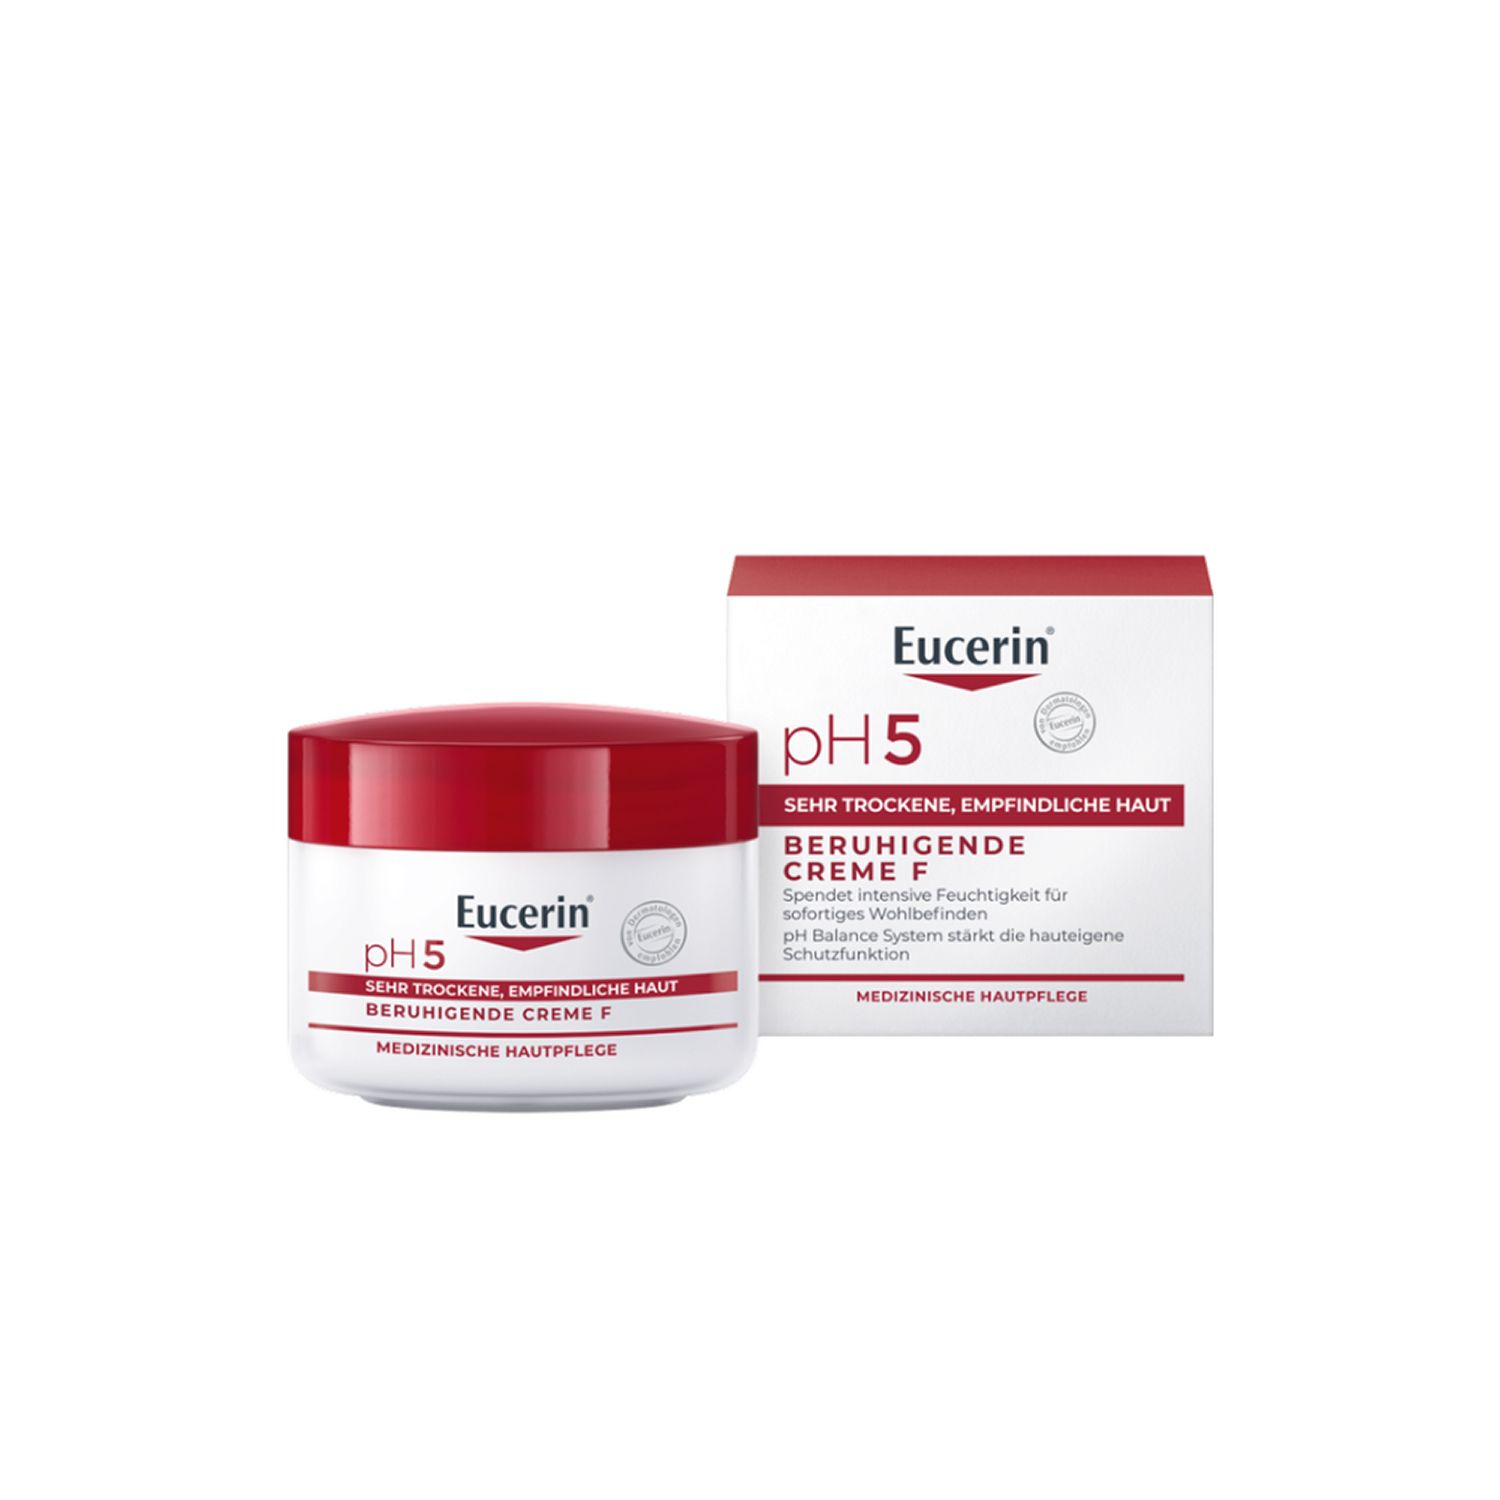 Eucerin® pH5 Reichhaltige Creme F – Beruhigende Hautpflege für strapazierte Haut, spendet 24h intensive Feuchtigkeit